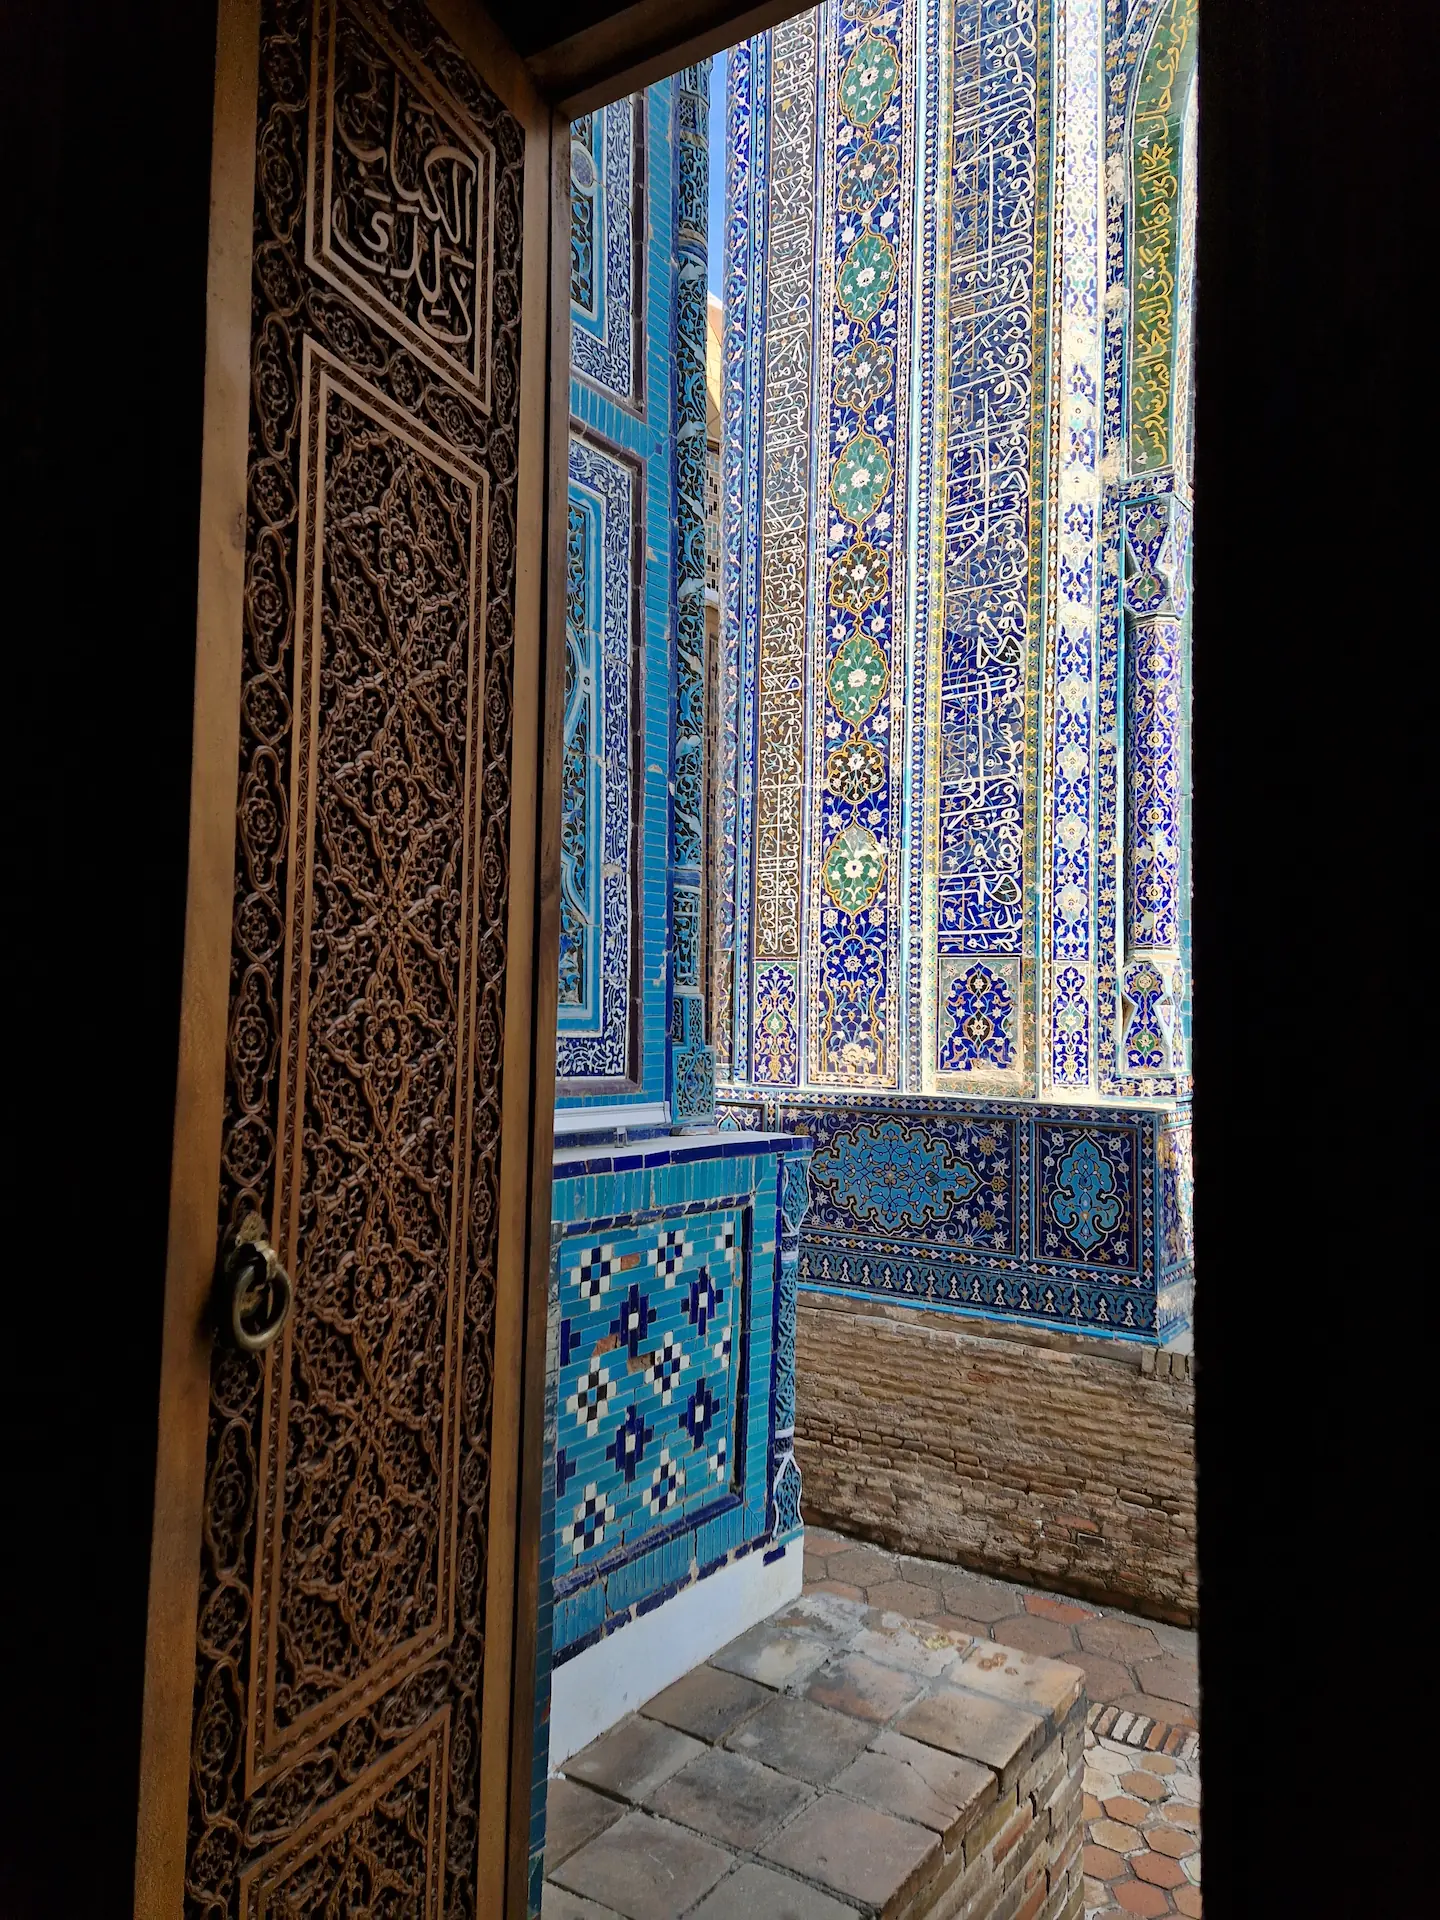 Une porte s'ouvrant sur les murs à motifs bleus et blancs